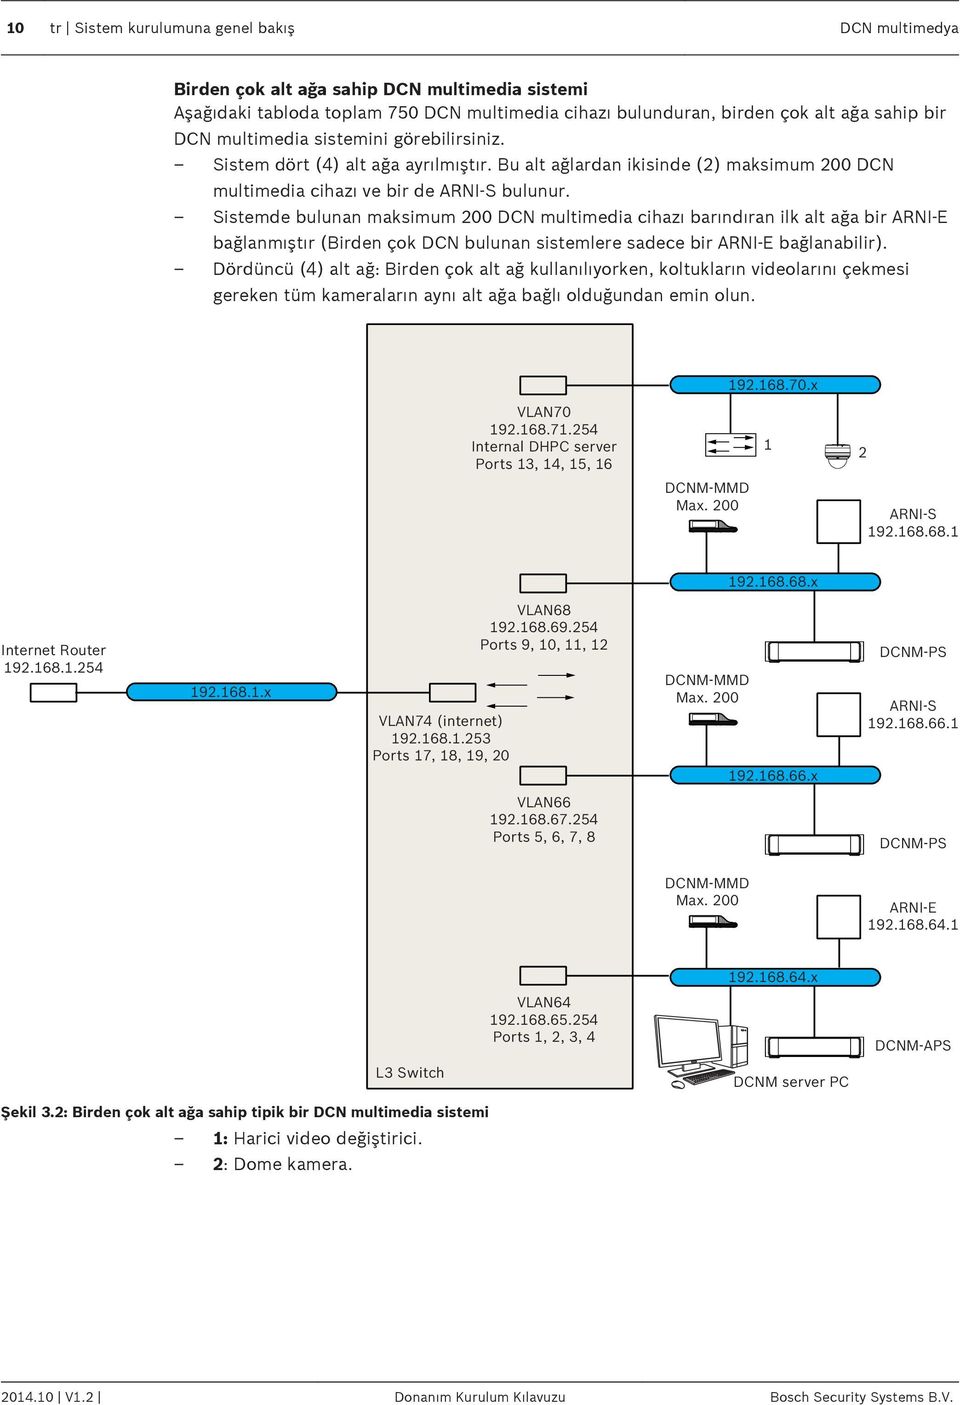 Sistemde bulunan maksimum 200 DCN multimedia cihazı barındıran ilk alt ağa bir ARNI-E bağlanmıştır (Birden çok DCN bulunan sistemlere sadece bir ARNI-E bağlanabilir).